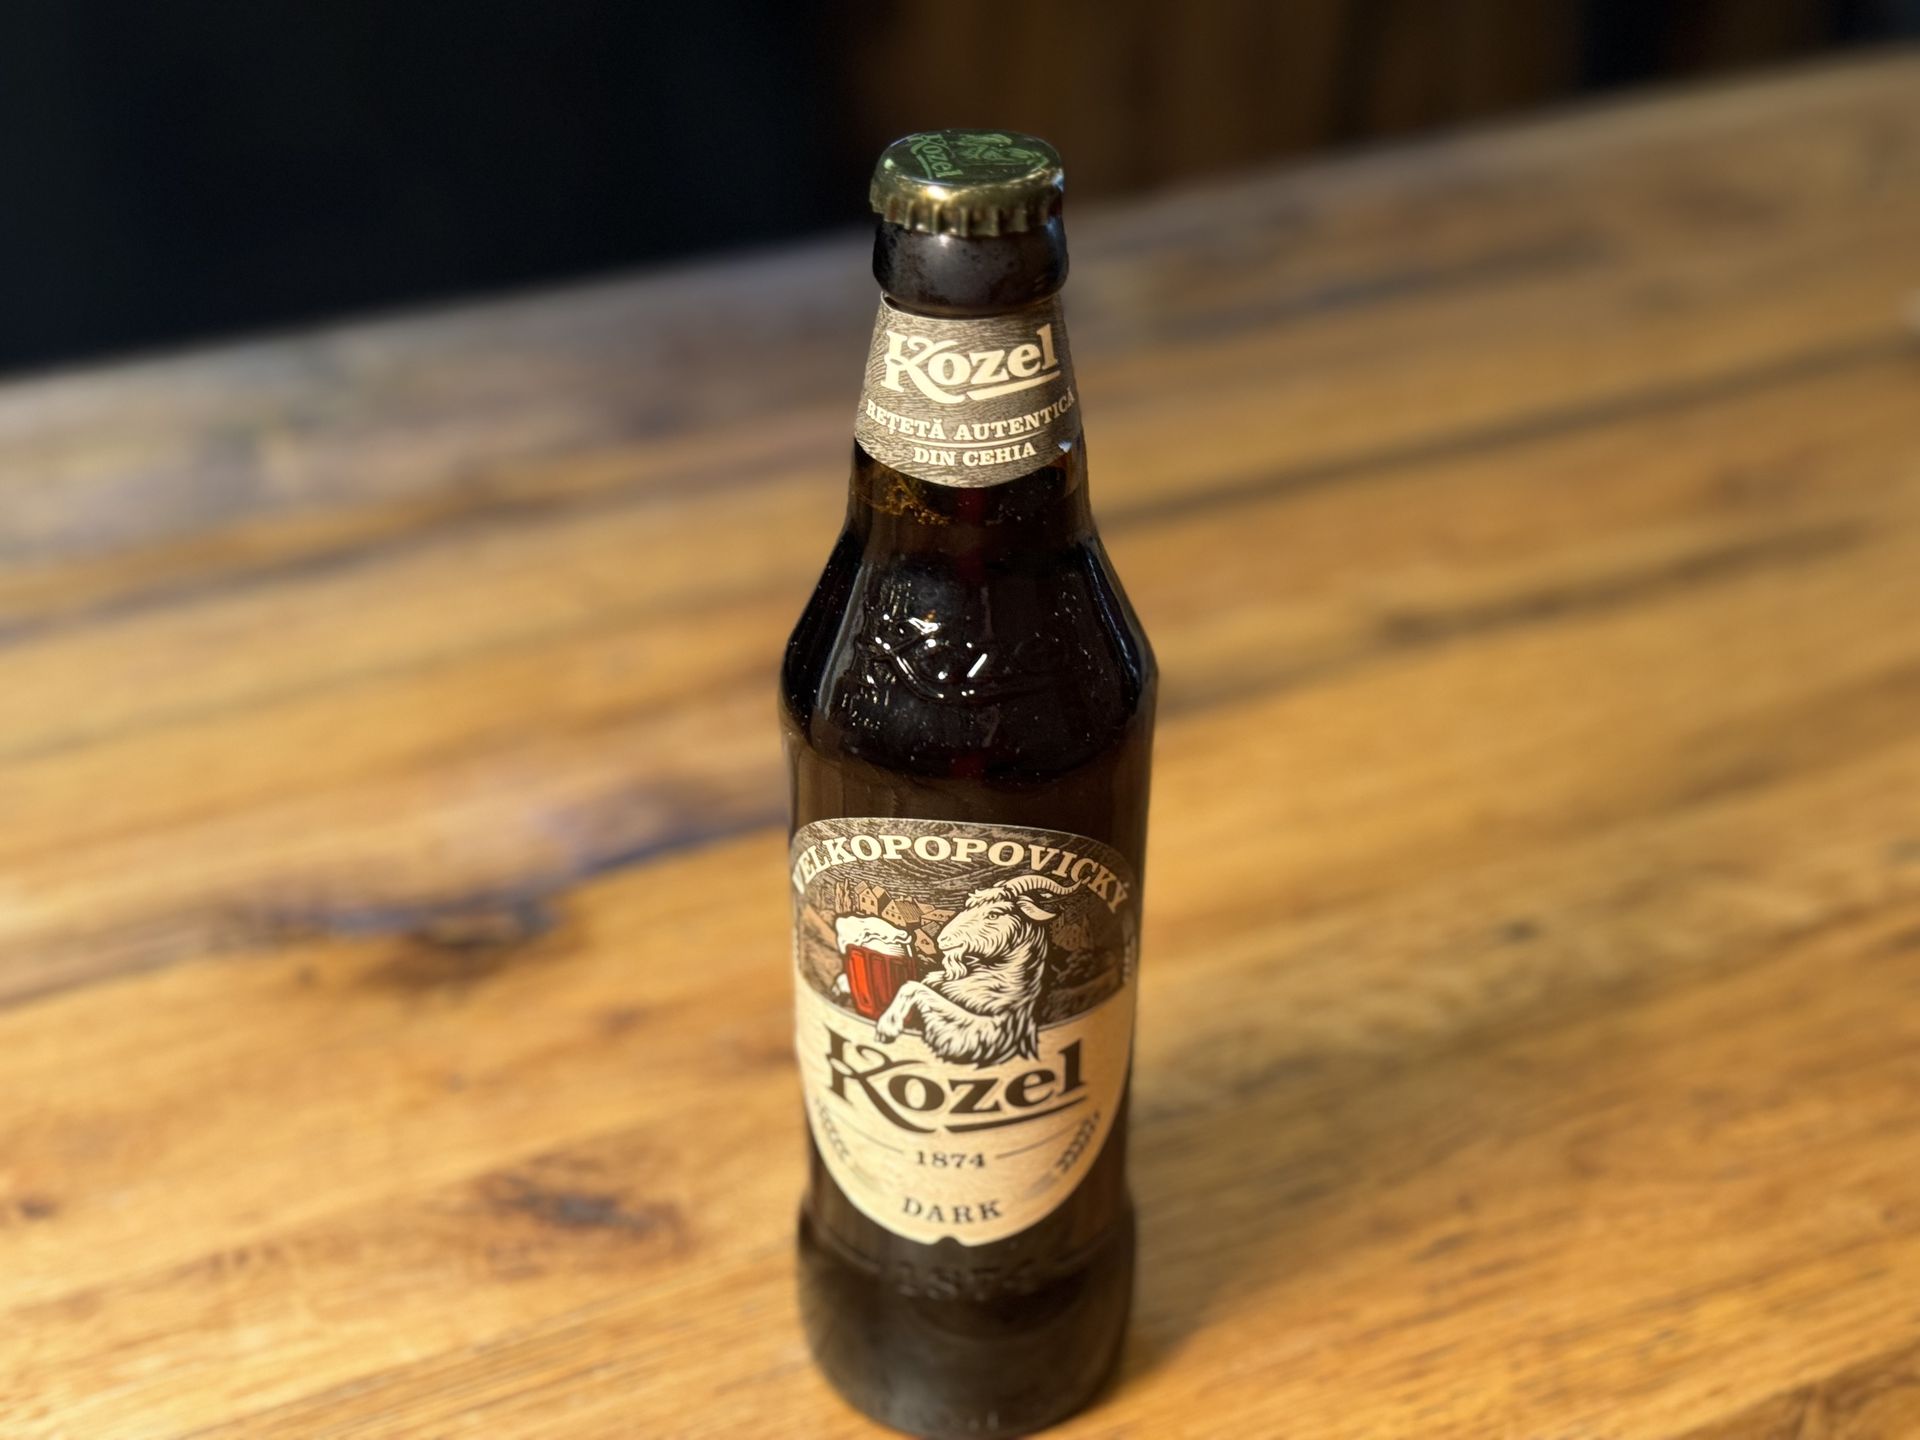 Kozel Dark bottle